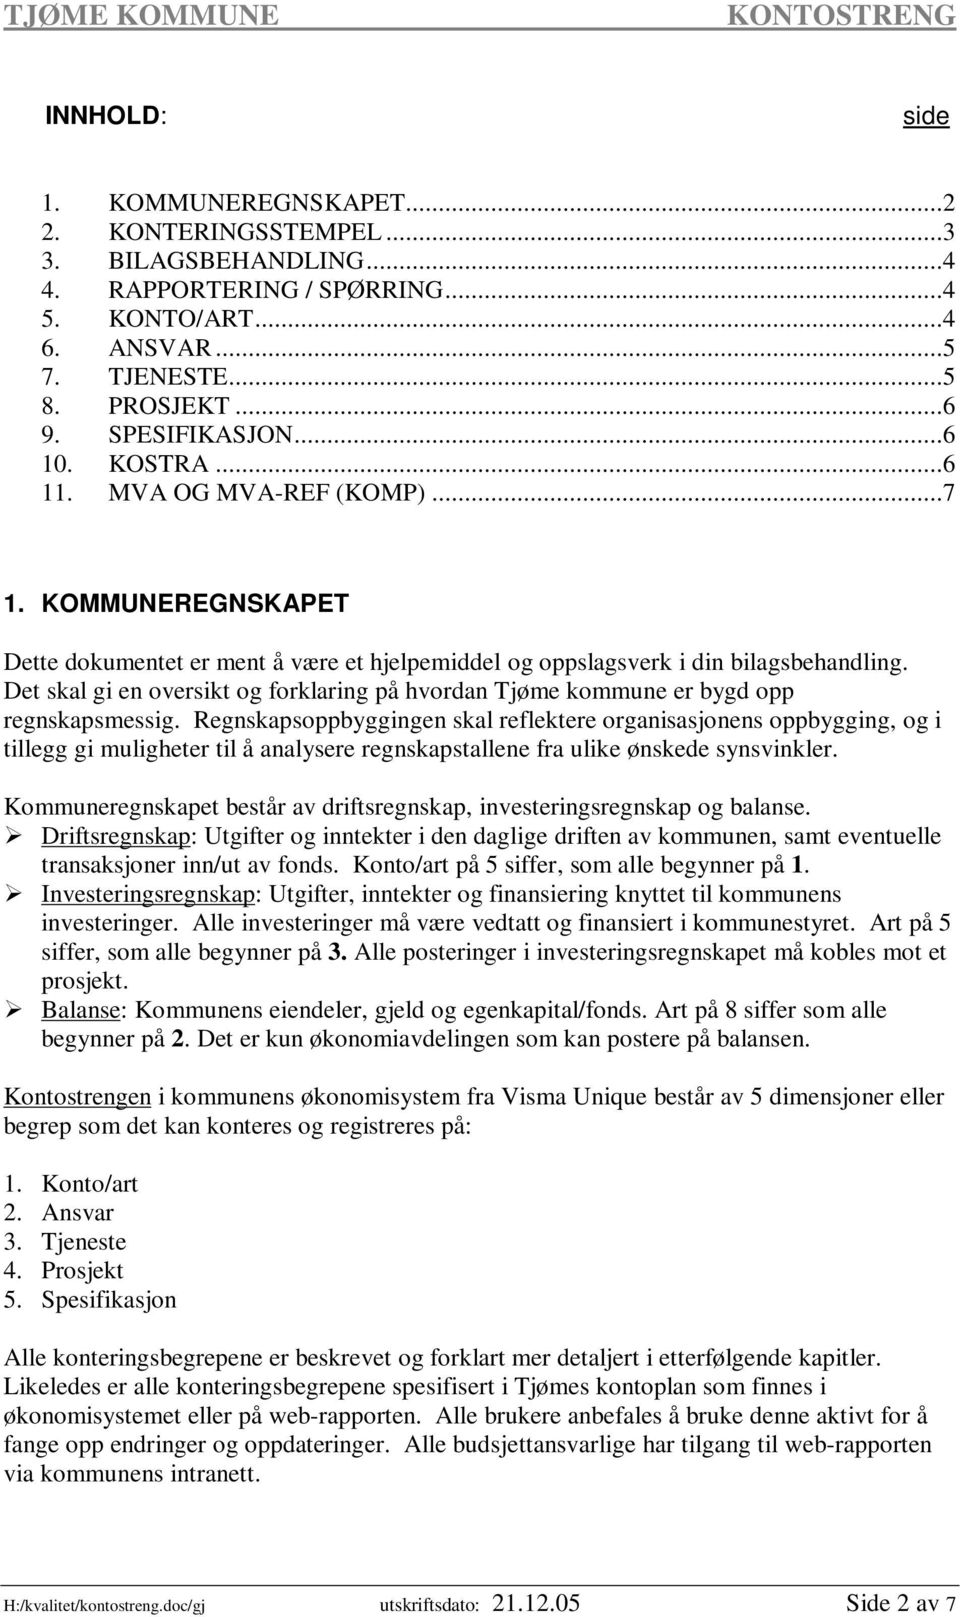 Det skal gi en oversikt og forklaring på hvordan Tjøme kommune er bygd opp regnskapsmessig.